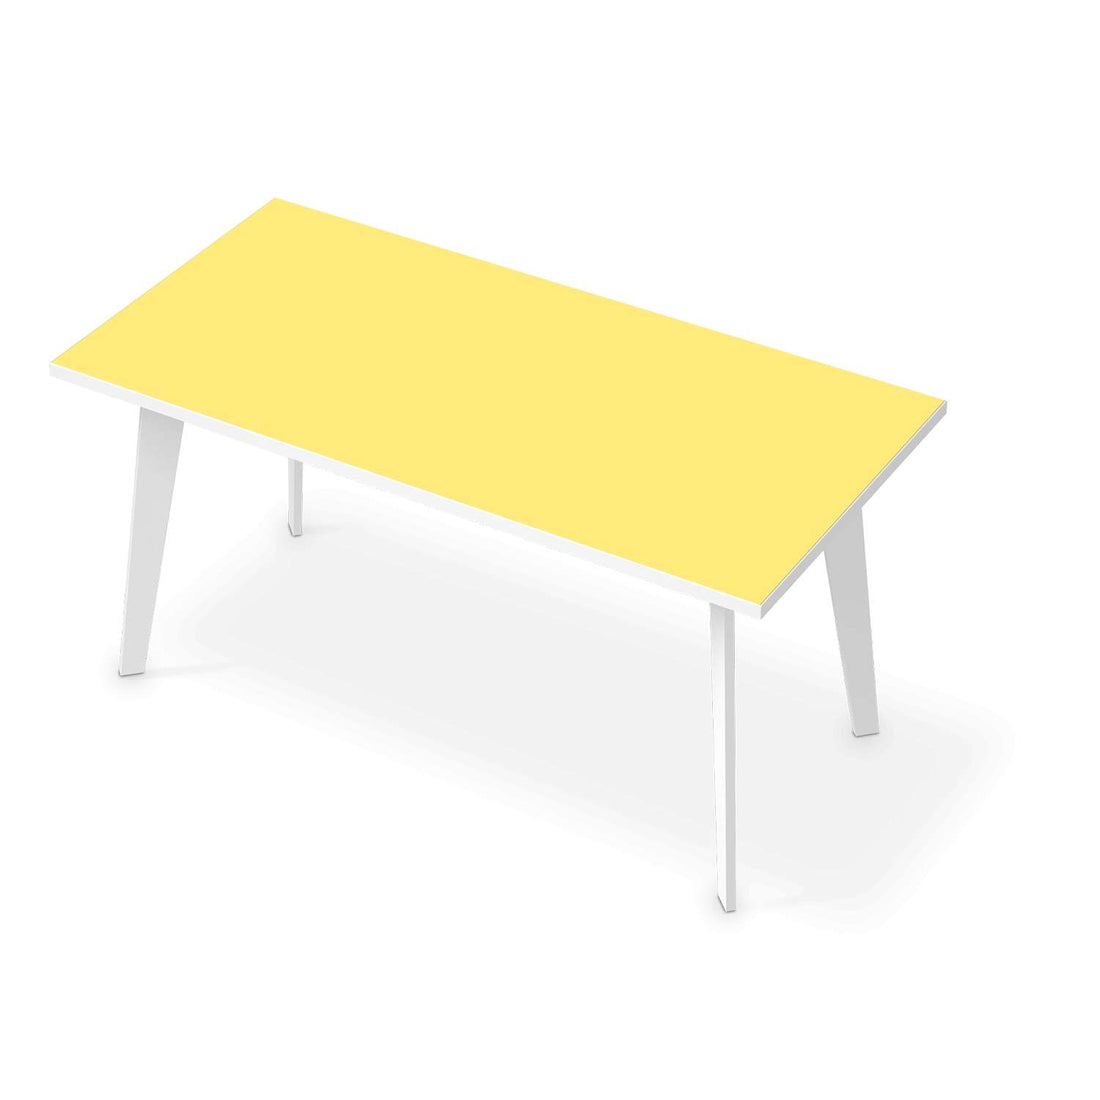 Tischfolie Gelb Light - Esszimmer Tisch 160x80 cm